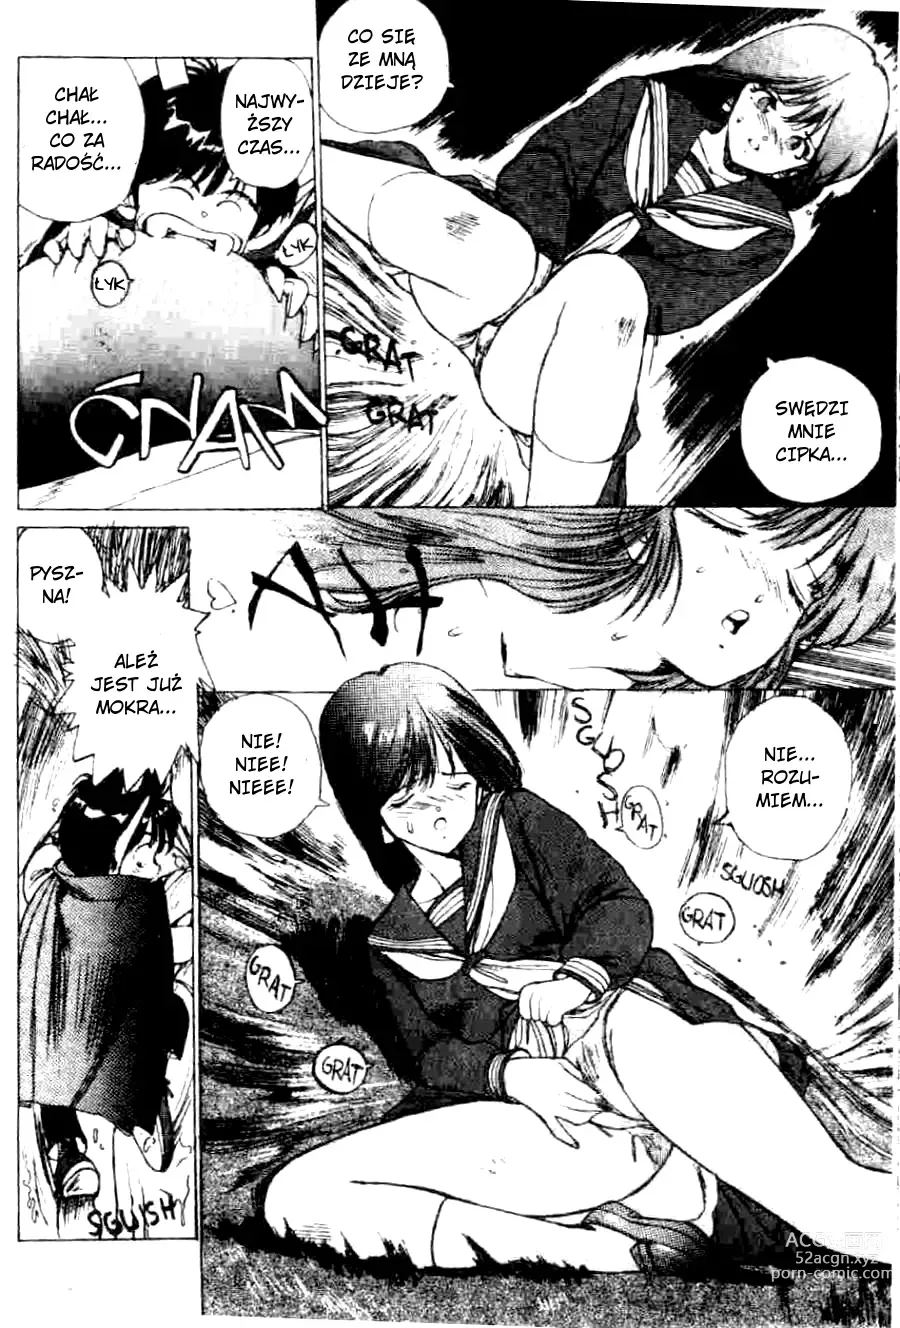 Page 11 of manga Grzeszne swędzenie